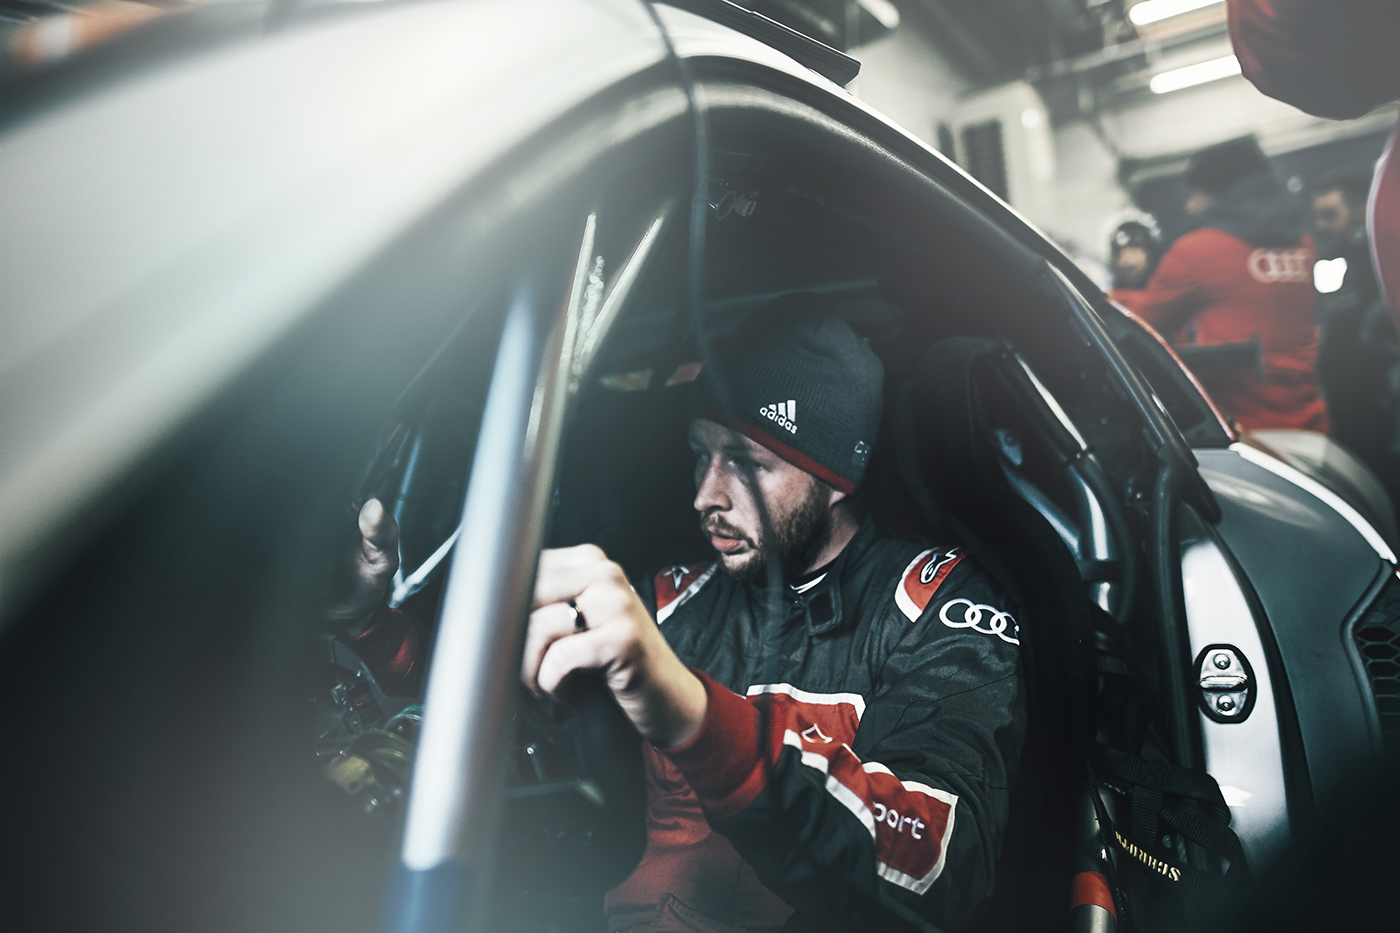 Motorsport Audi LeMans nürburgring Canon automotive   transportation Racing team retouch